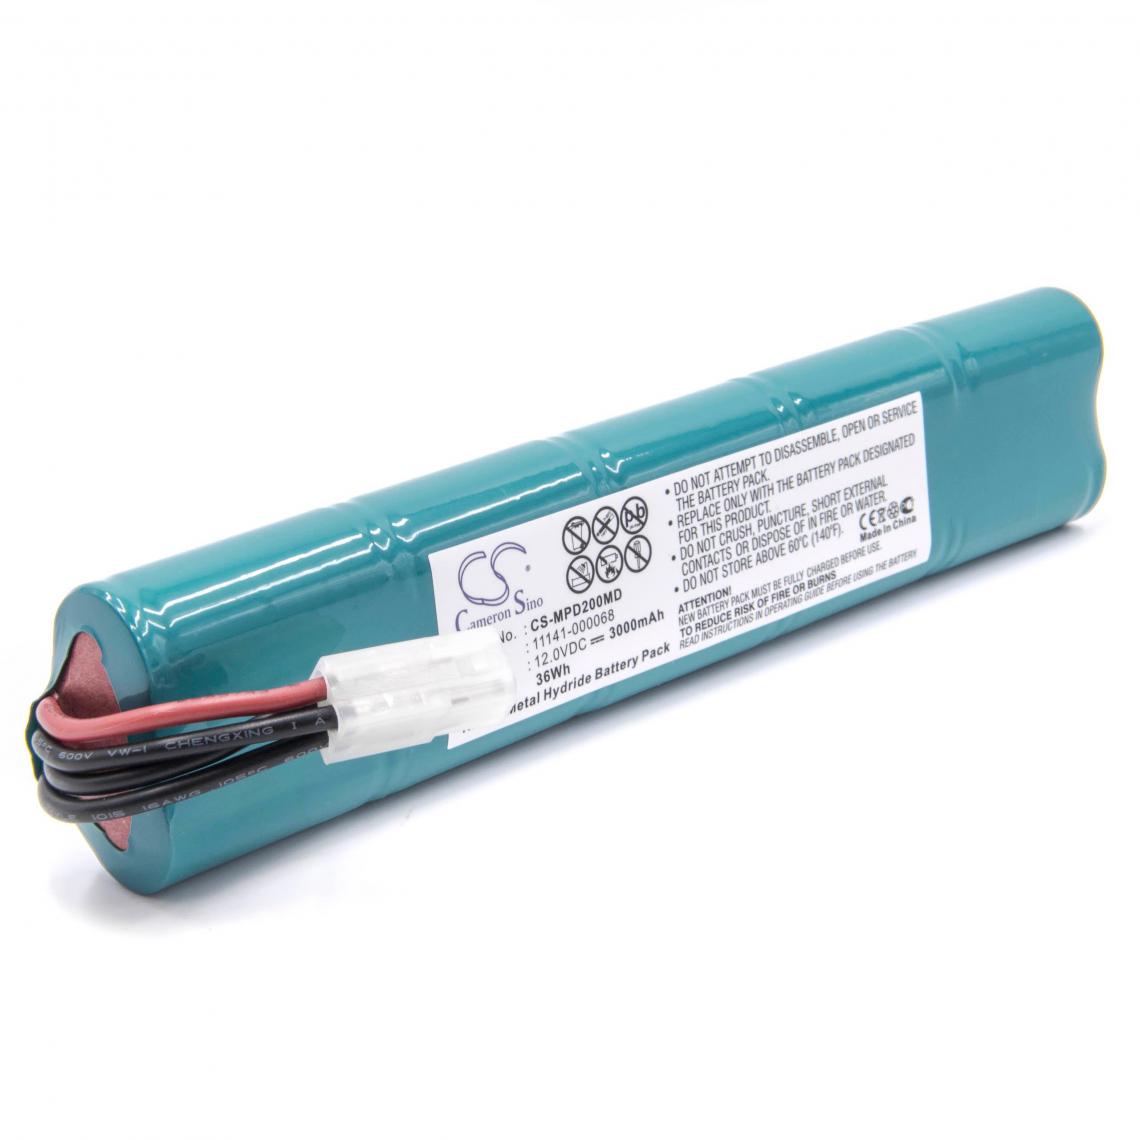 Vhbw - vhbw Batterie compatible avec Physio Control Lifepak 20 Defibrillator appareil médical (3000mAh, 12V, NiMH) - Piles spécifiques